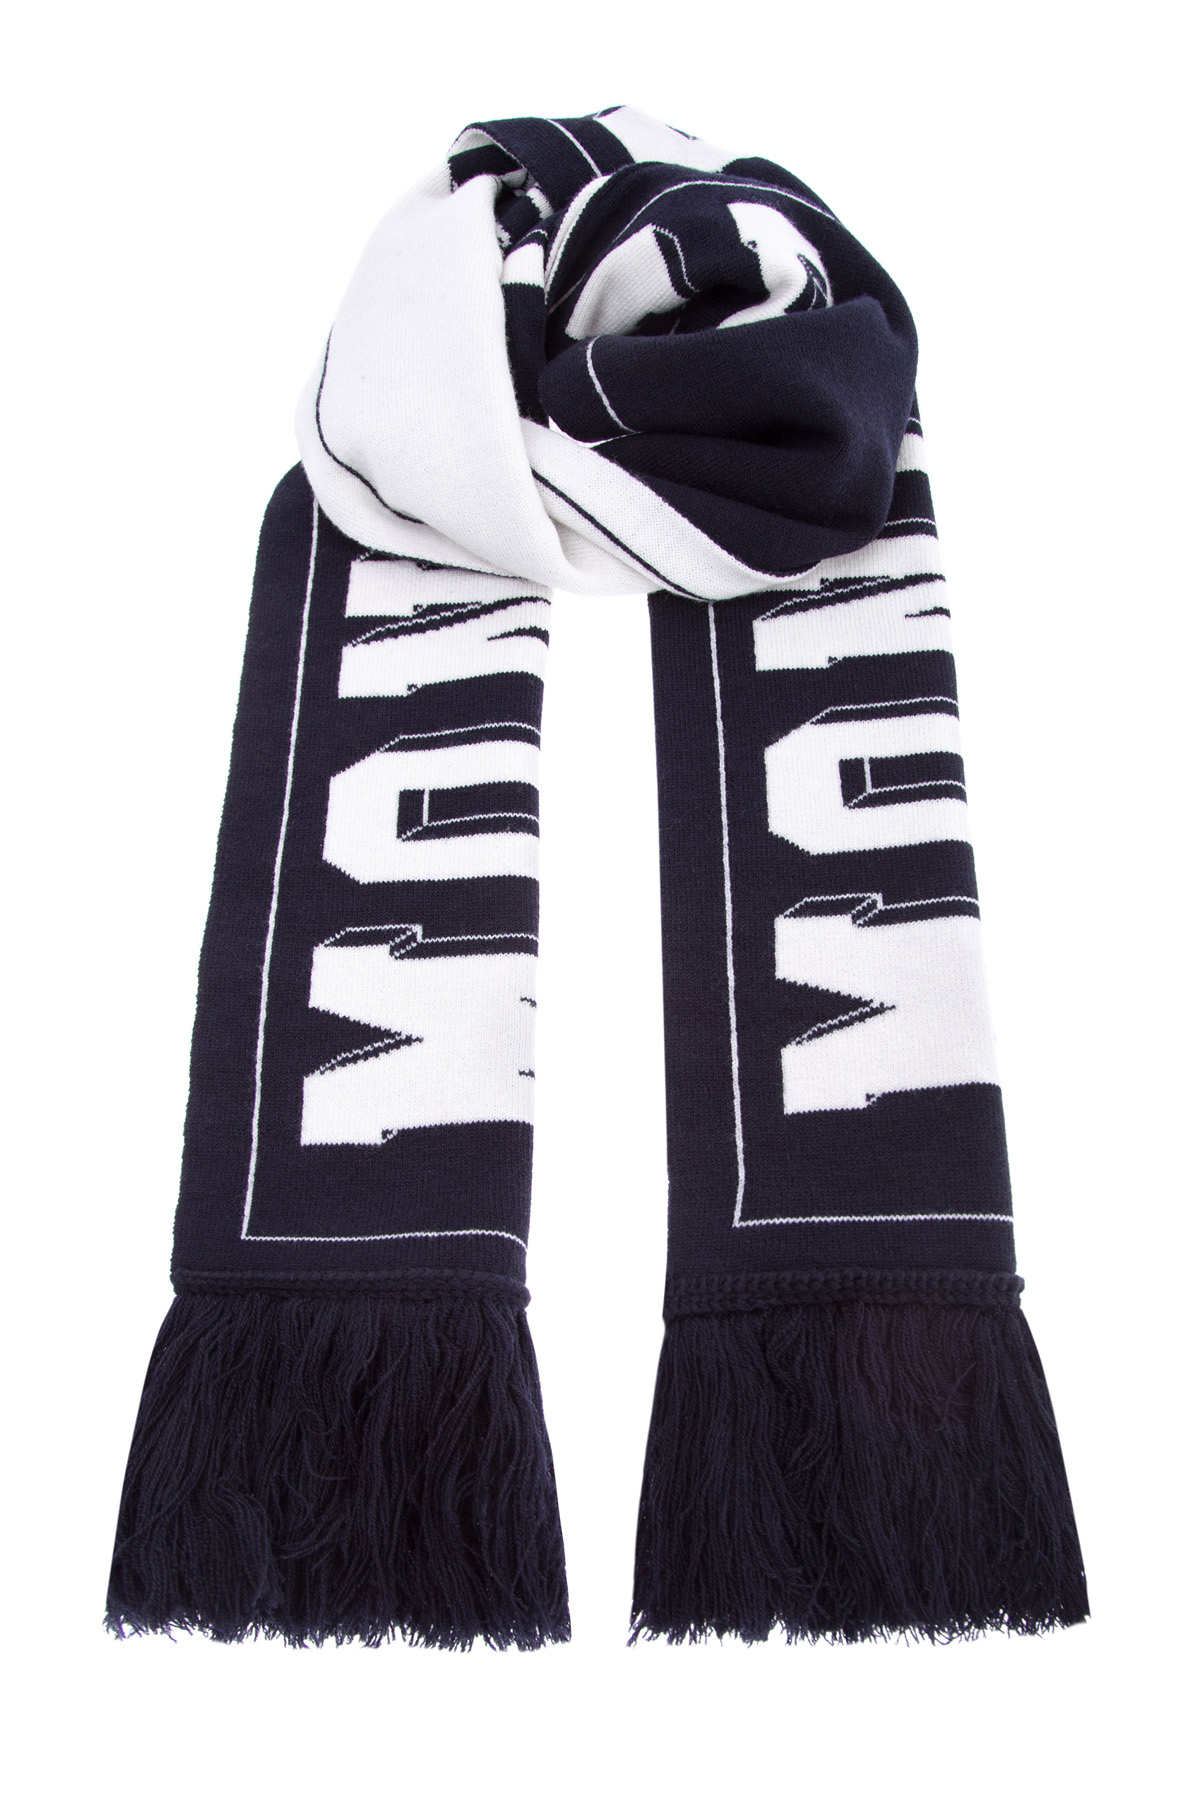 Шерстяной шарф с контрастной монограммой MONCLER, цвет черно-белый, размер 48 - фото 1